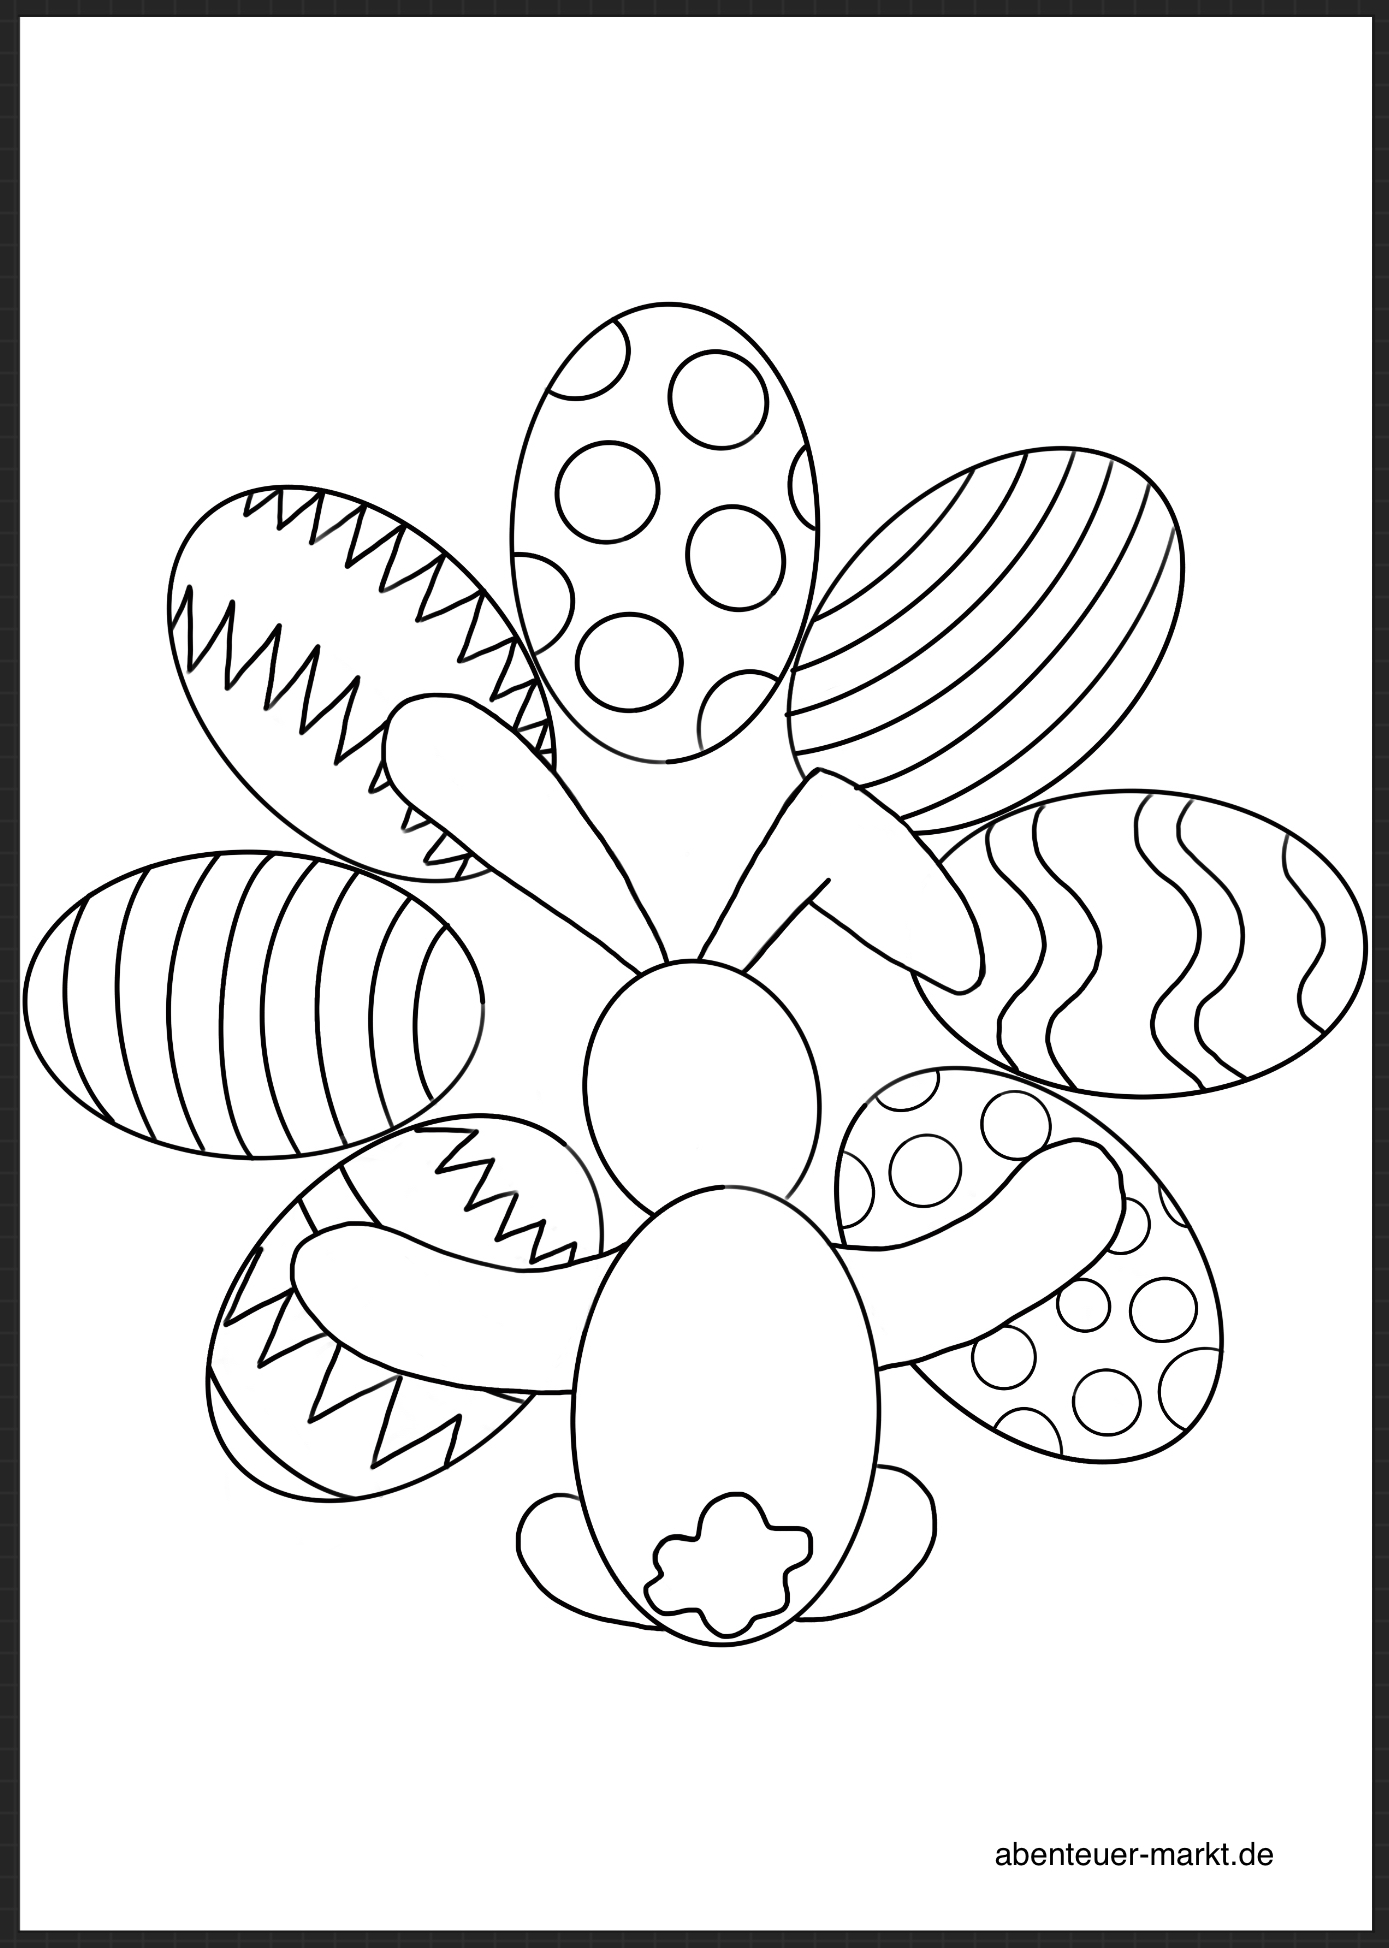 Bild zum Schritt 4 für das Bastel- und DIY-Abenteuer für Kinder: 'Ostereier mit Muster!'